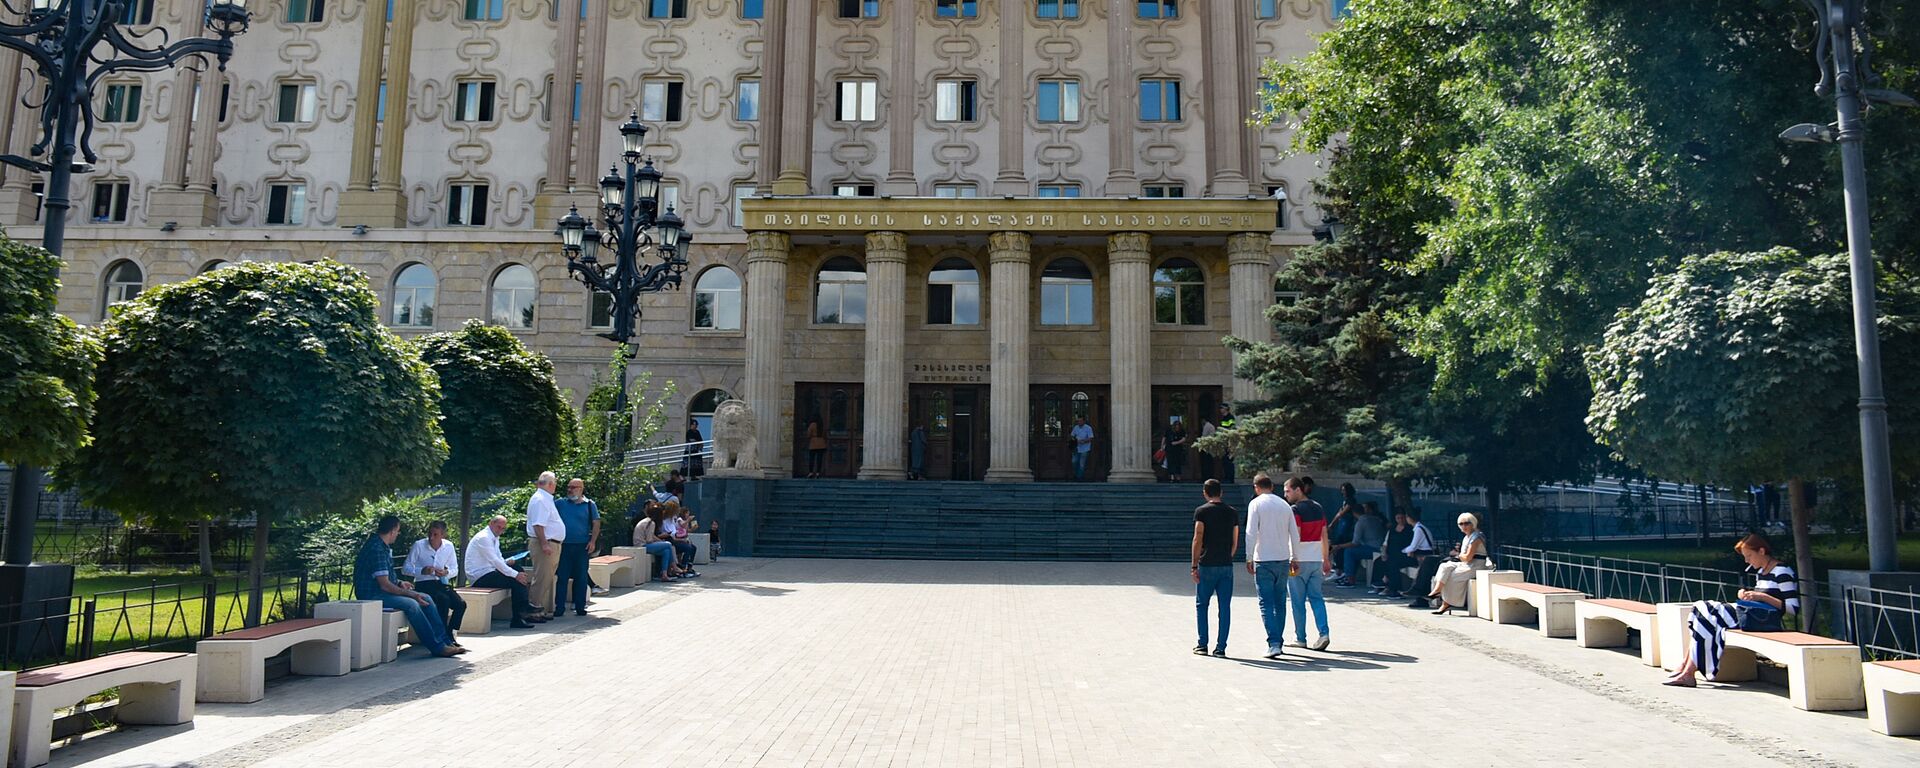 Тбилисский городской суд - Sputnik Грузия, 1920, 16.04.2021